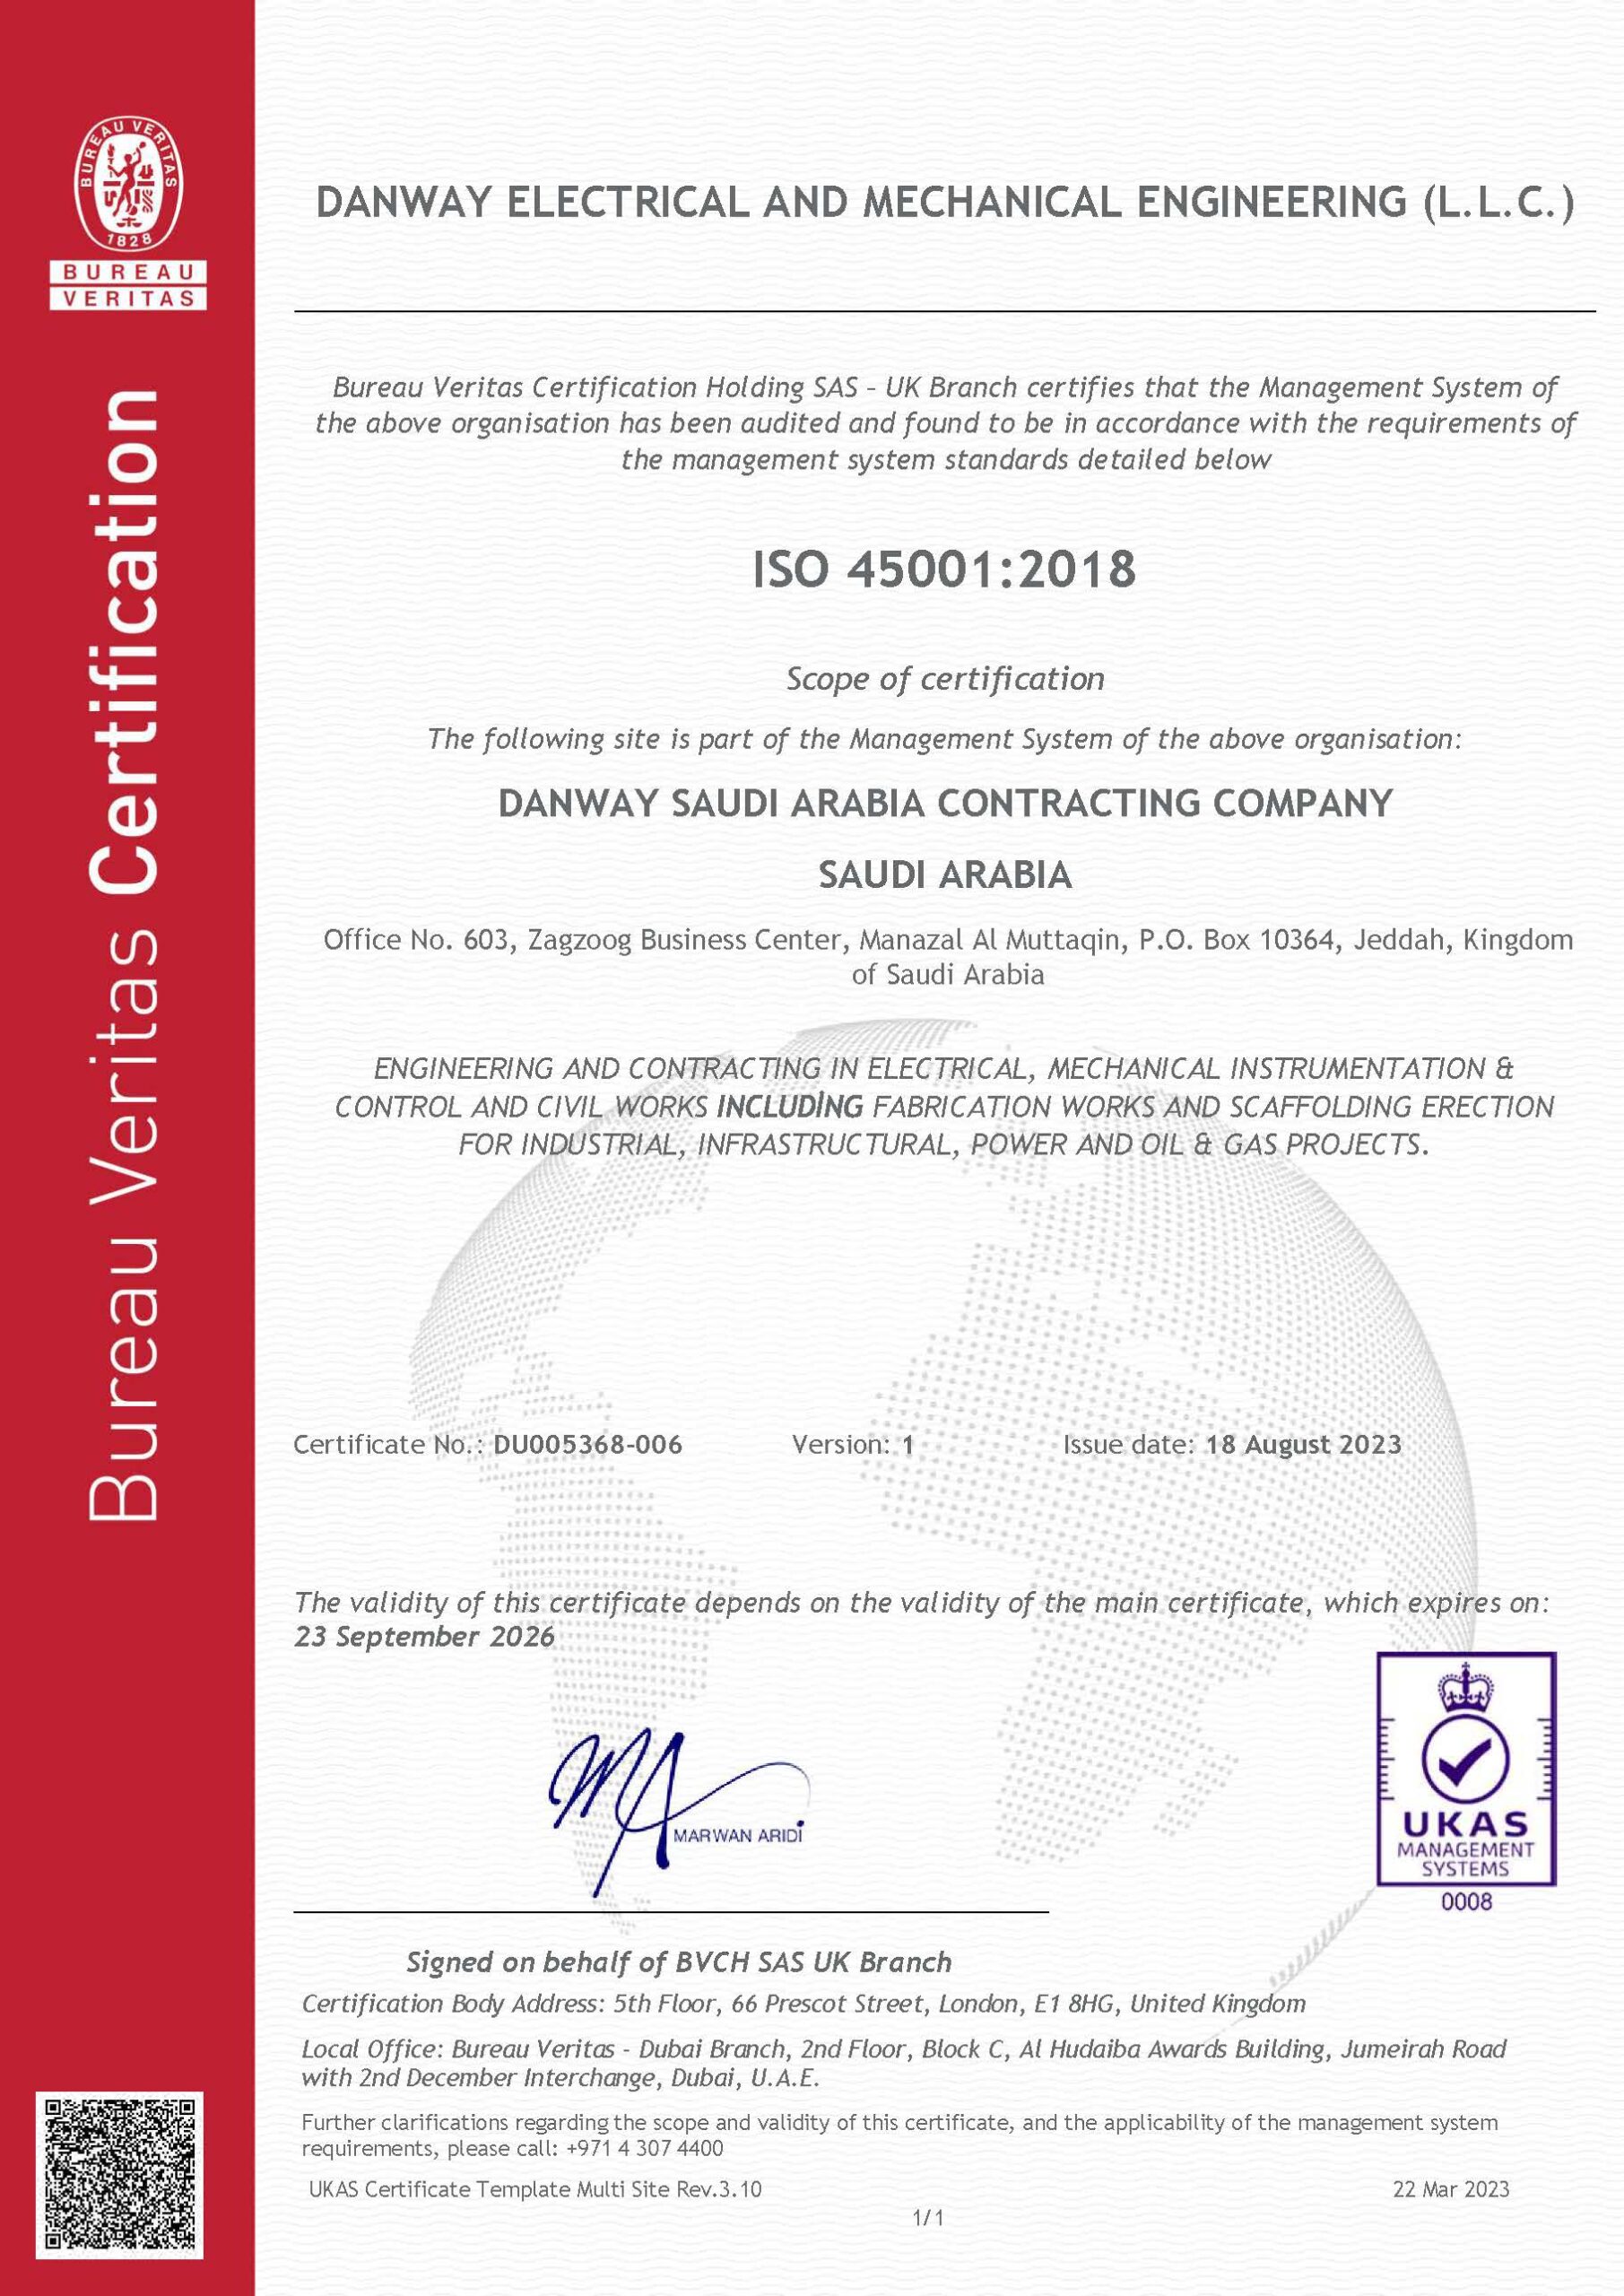 ISO45001:2018 Danway EME, KSA